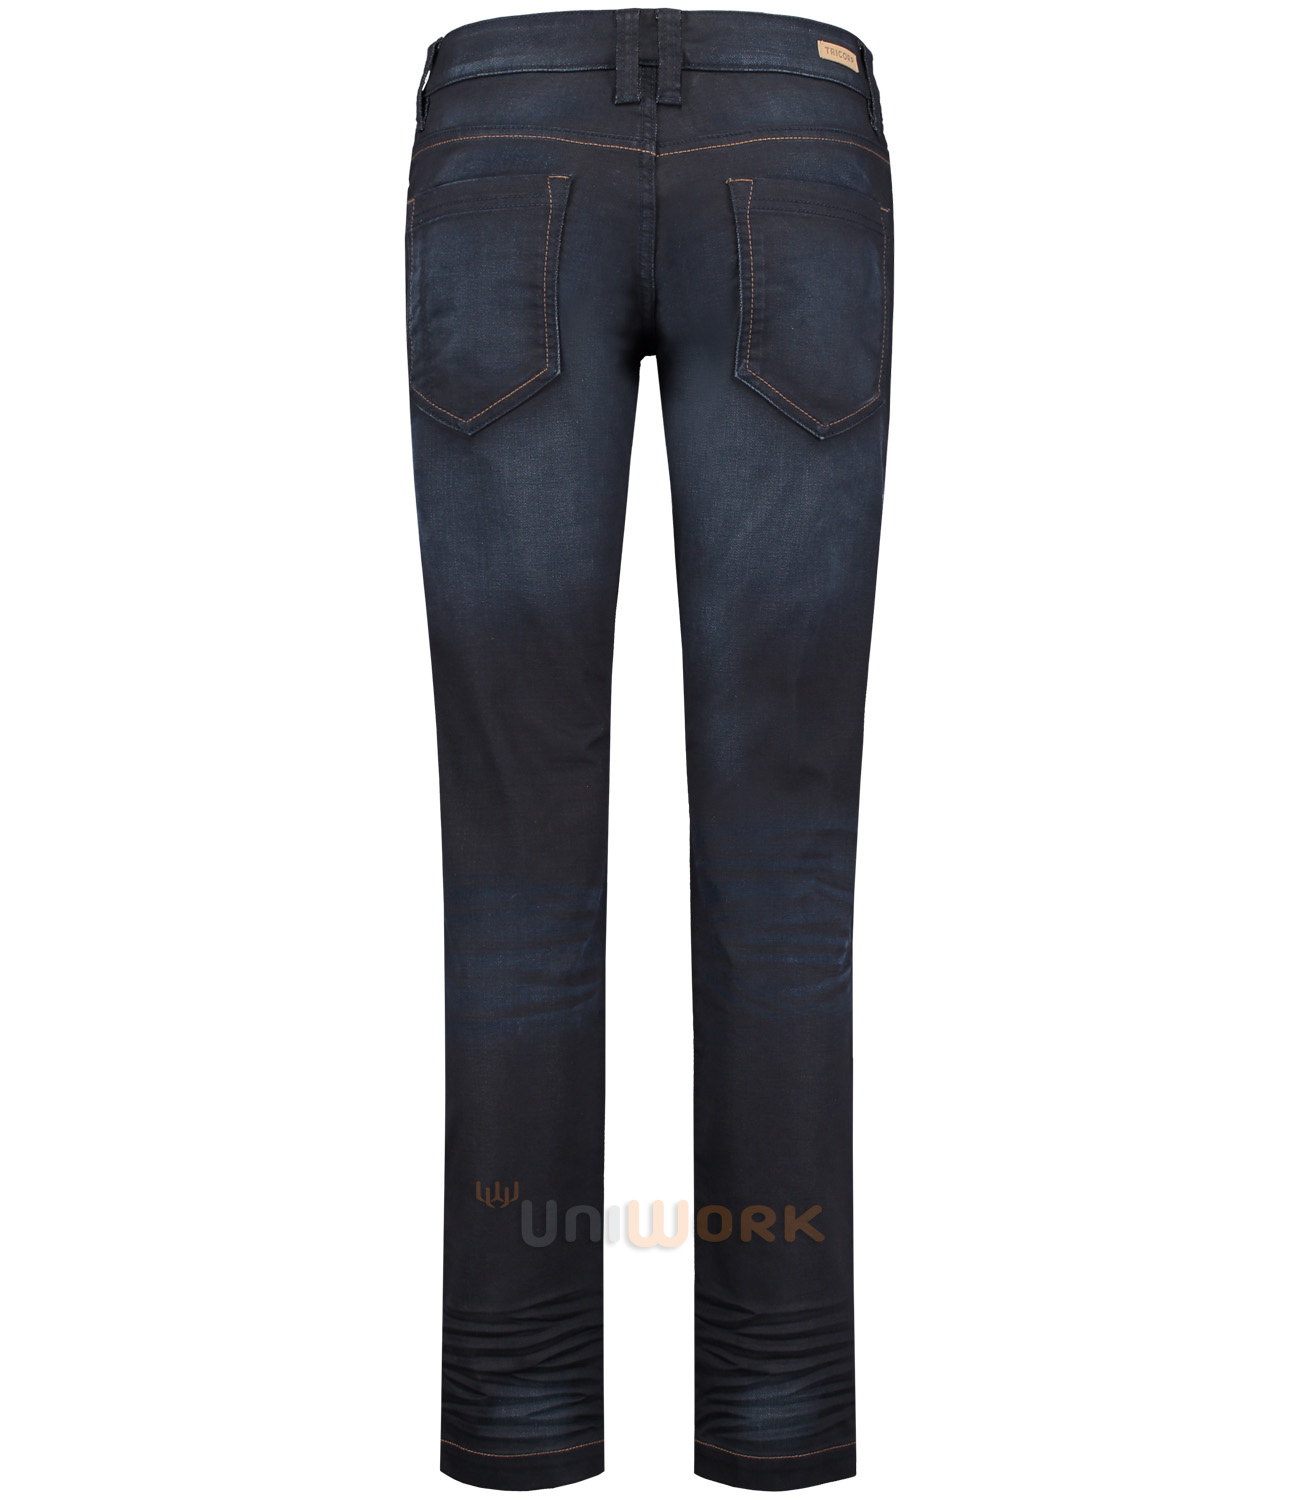 bijtend Stamboom realiteit Jeans Premium Stretch Dames | Tricorp.clothing - Uniwork brandstore